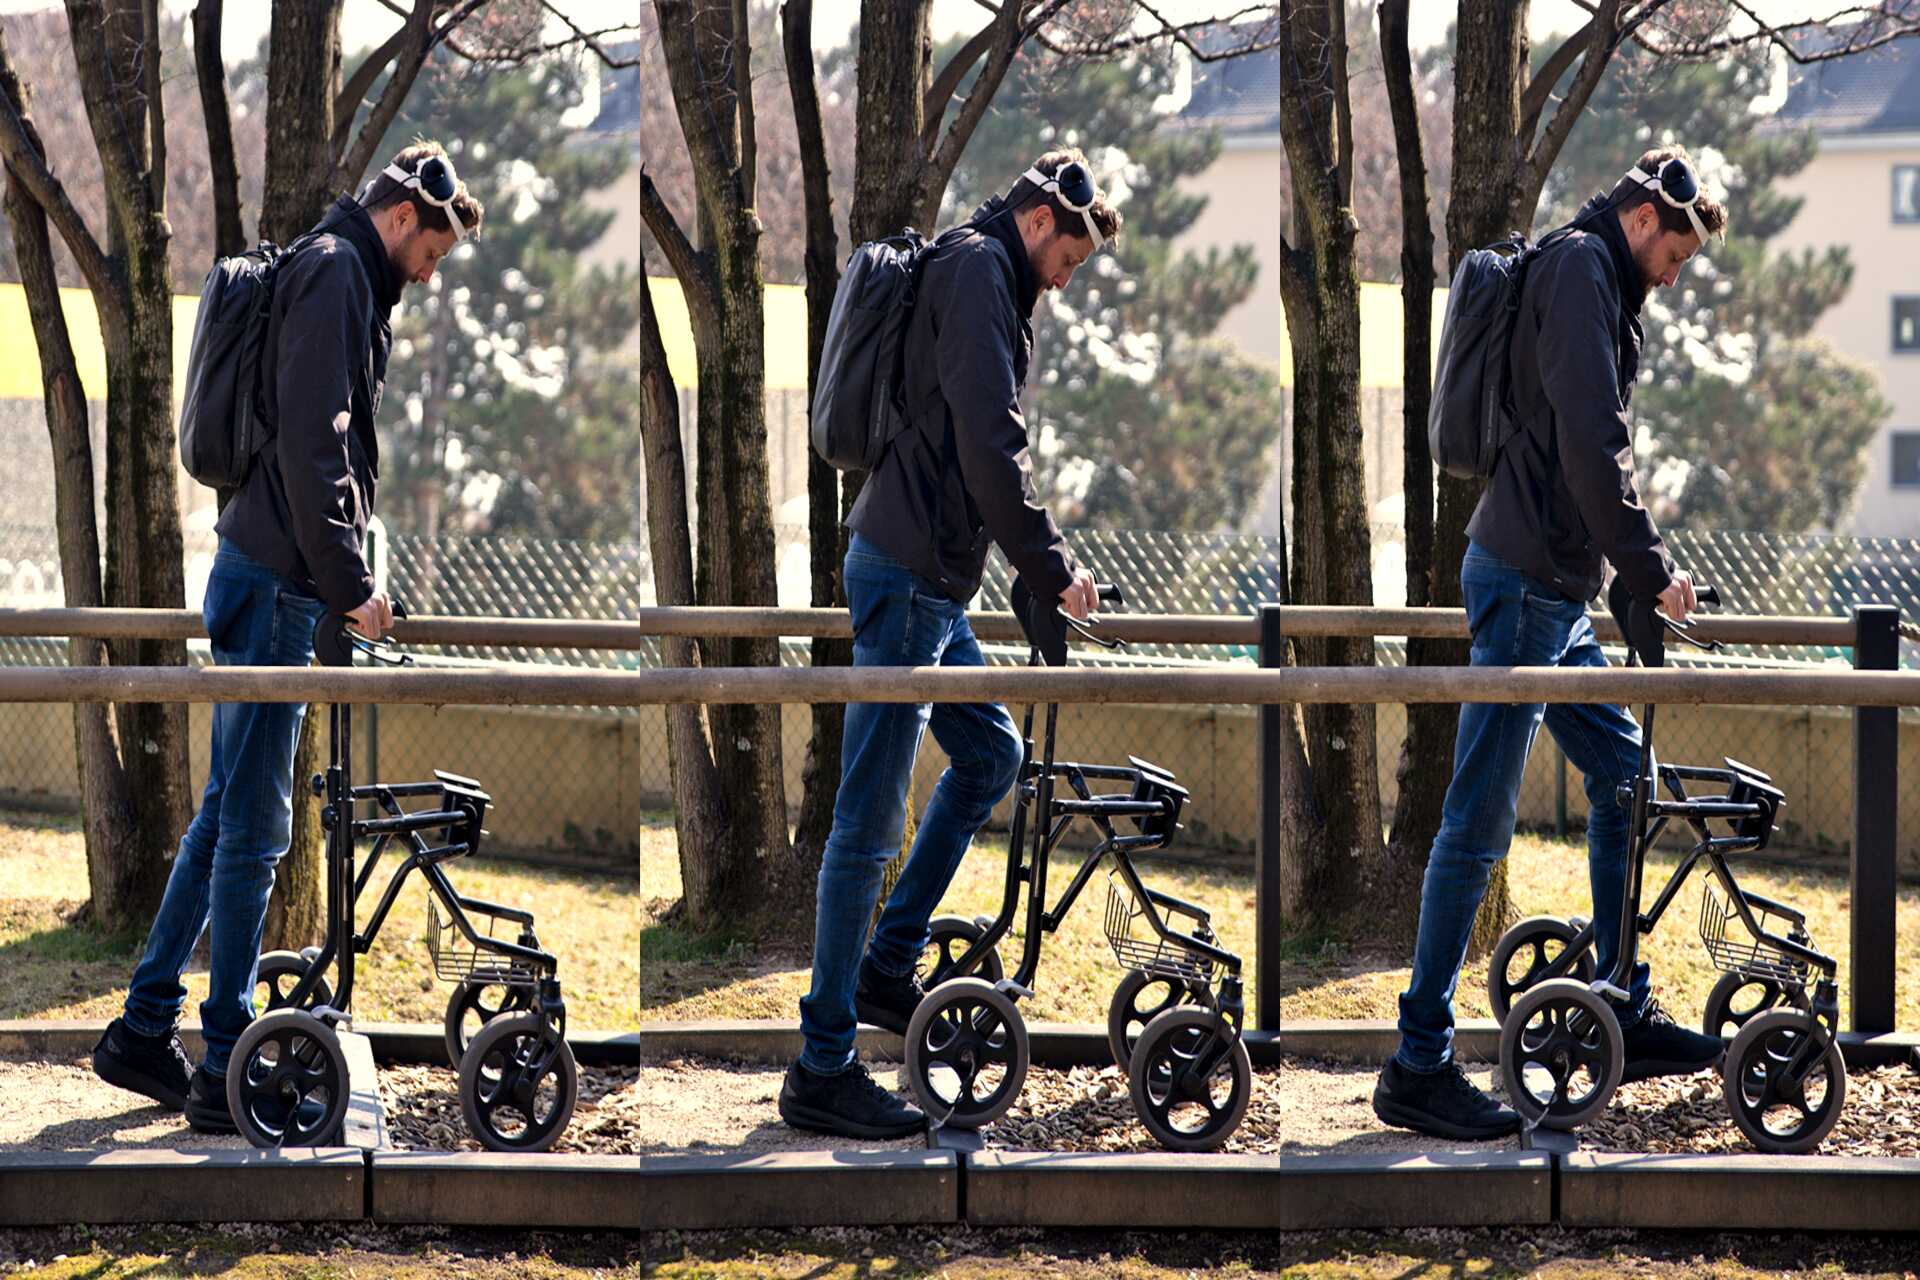 הליכה בזכות מחשבה: גרט-יאן אוסקם, שהיה משותק בגפיים התחתונות בעקבות תאונת אופניים ושהחל ללכת שוב הודות לגשר דיגיטלי בין המוח לחוט השדרה, באוניברסיטת לוזאן